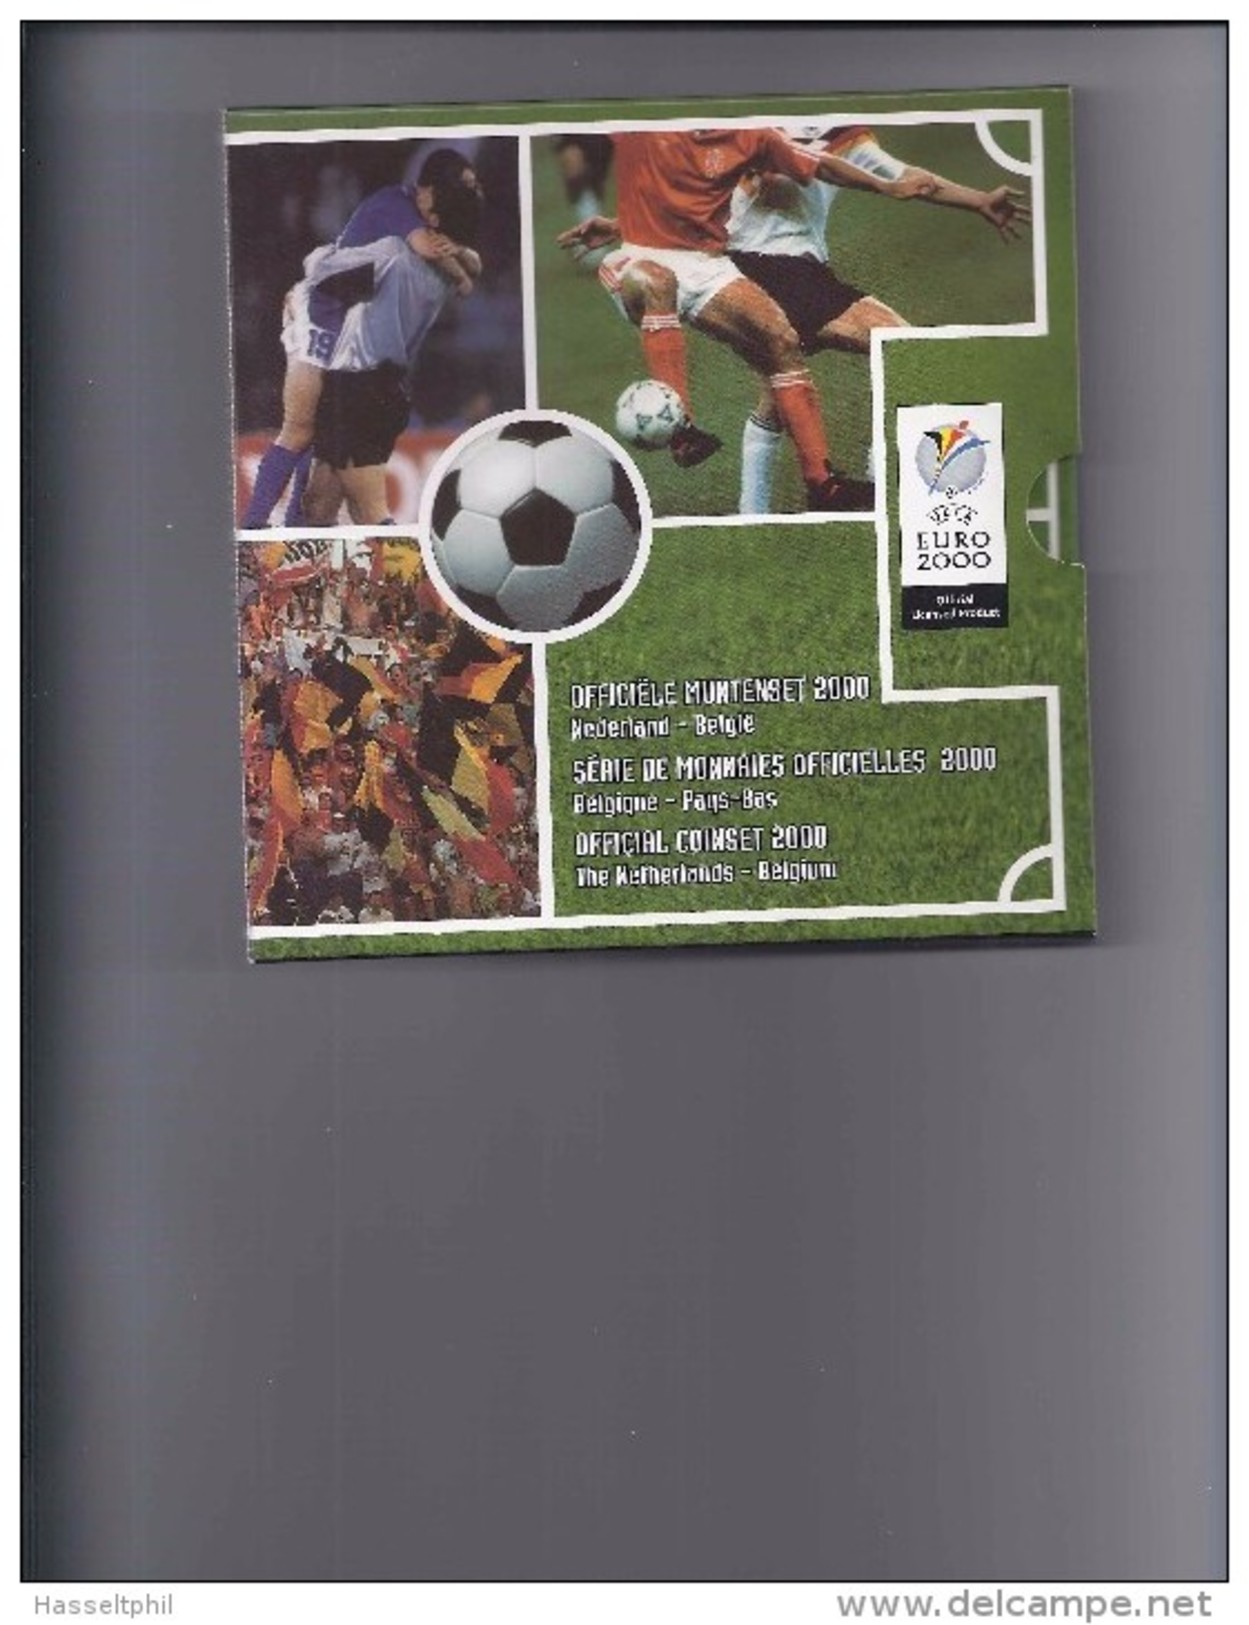 BELGIE -BELGIQUE Officiële Muntenset 2000 Nederland - België  Uefa Euro 2000 - 50 Frank